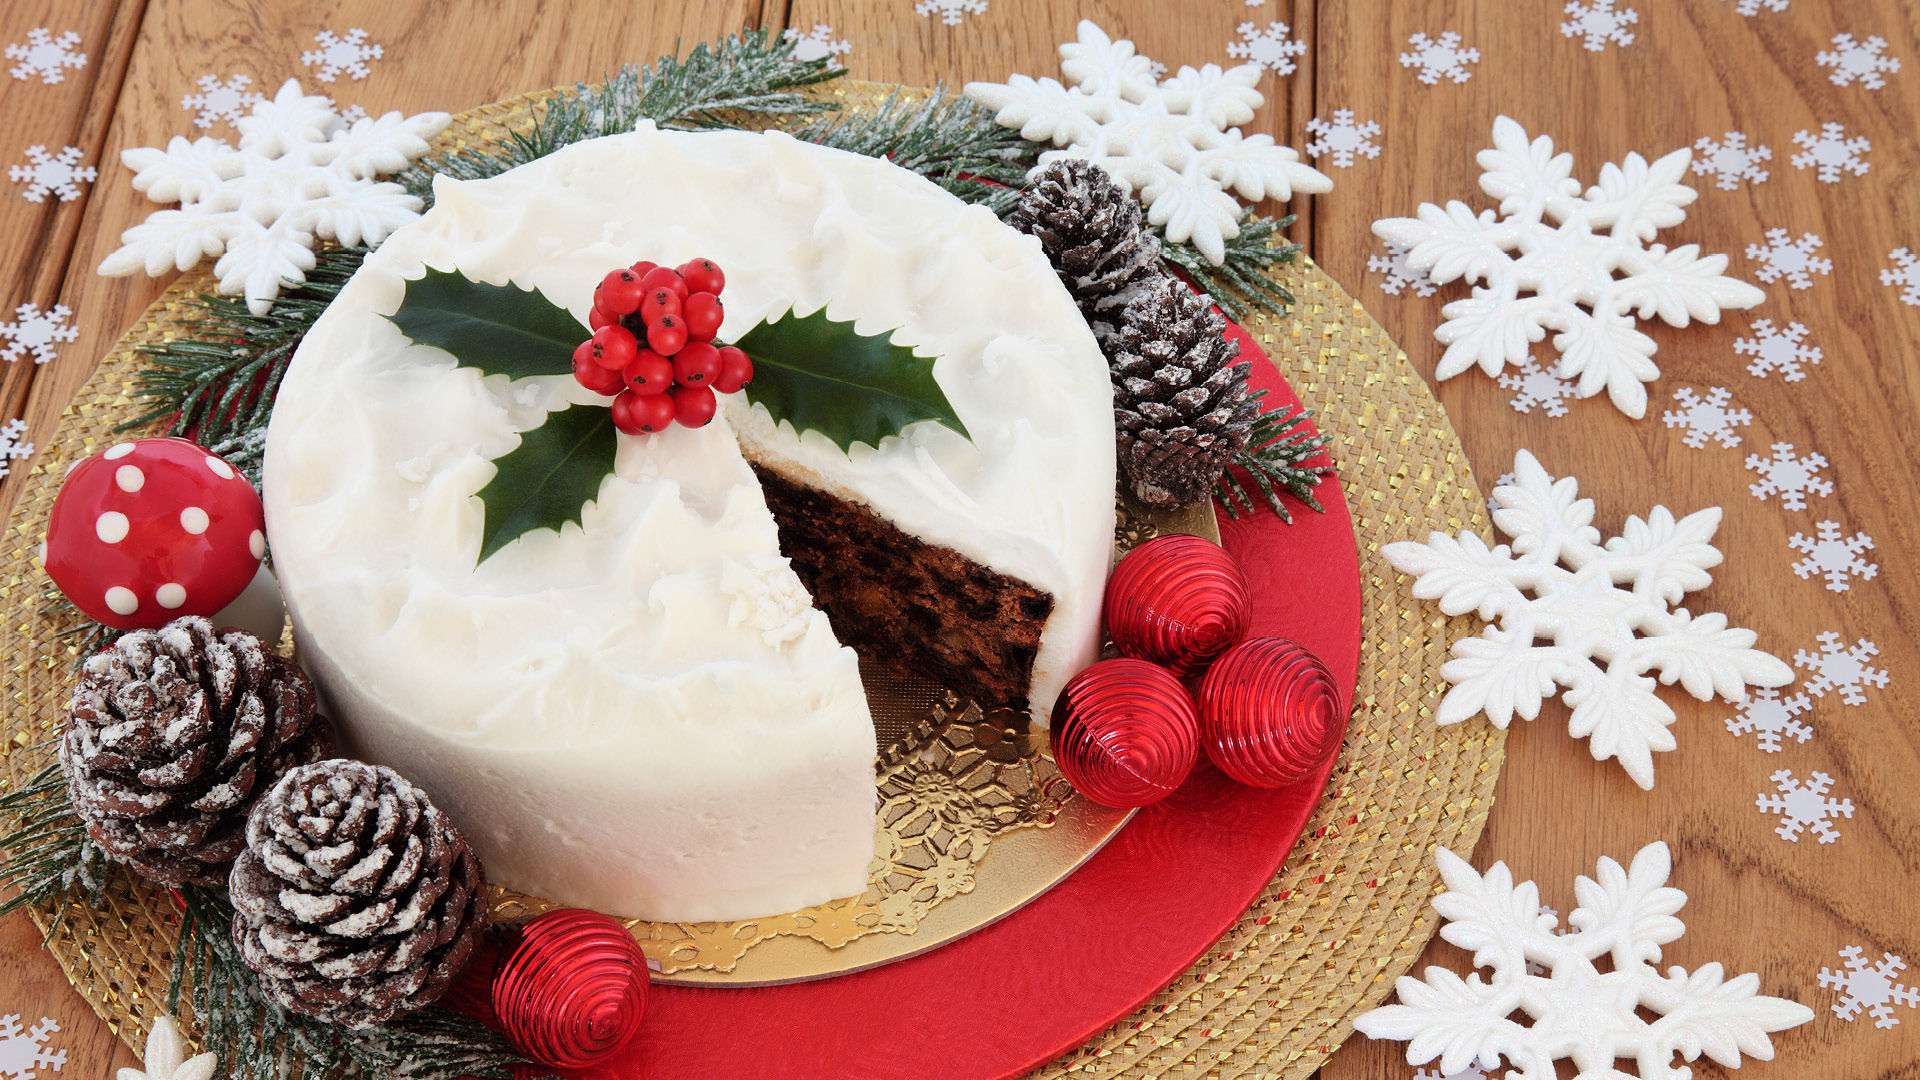 Best Christmas Cake Ideas for Celebrating the Season - Sendbestgift.com